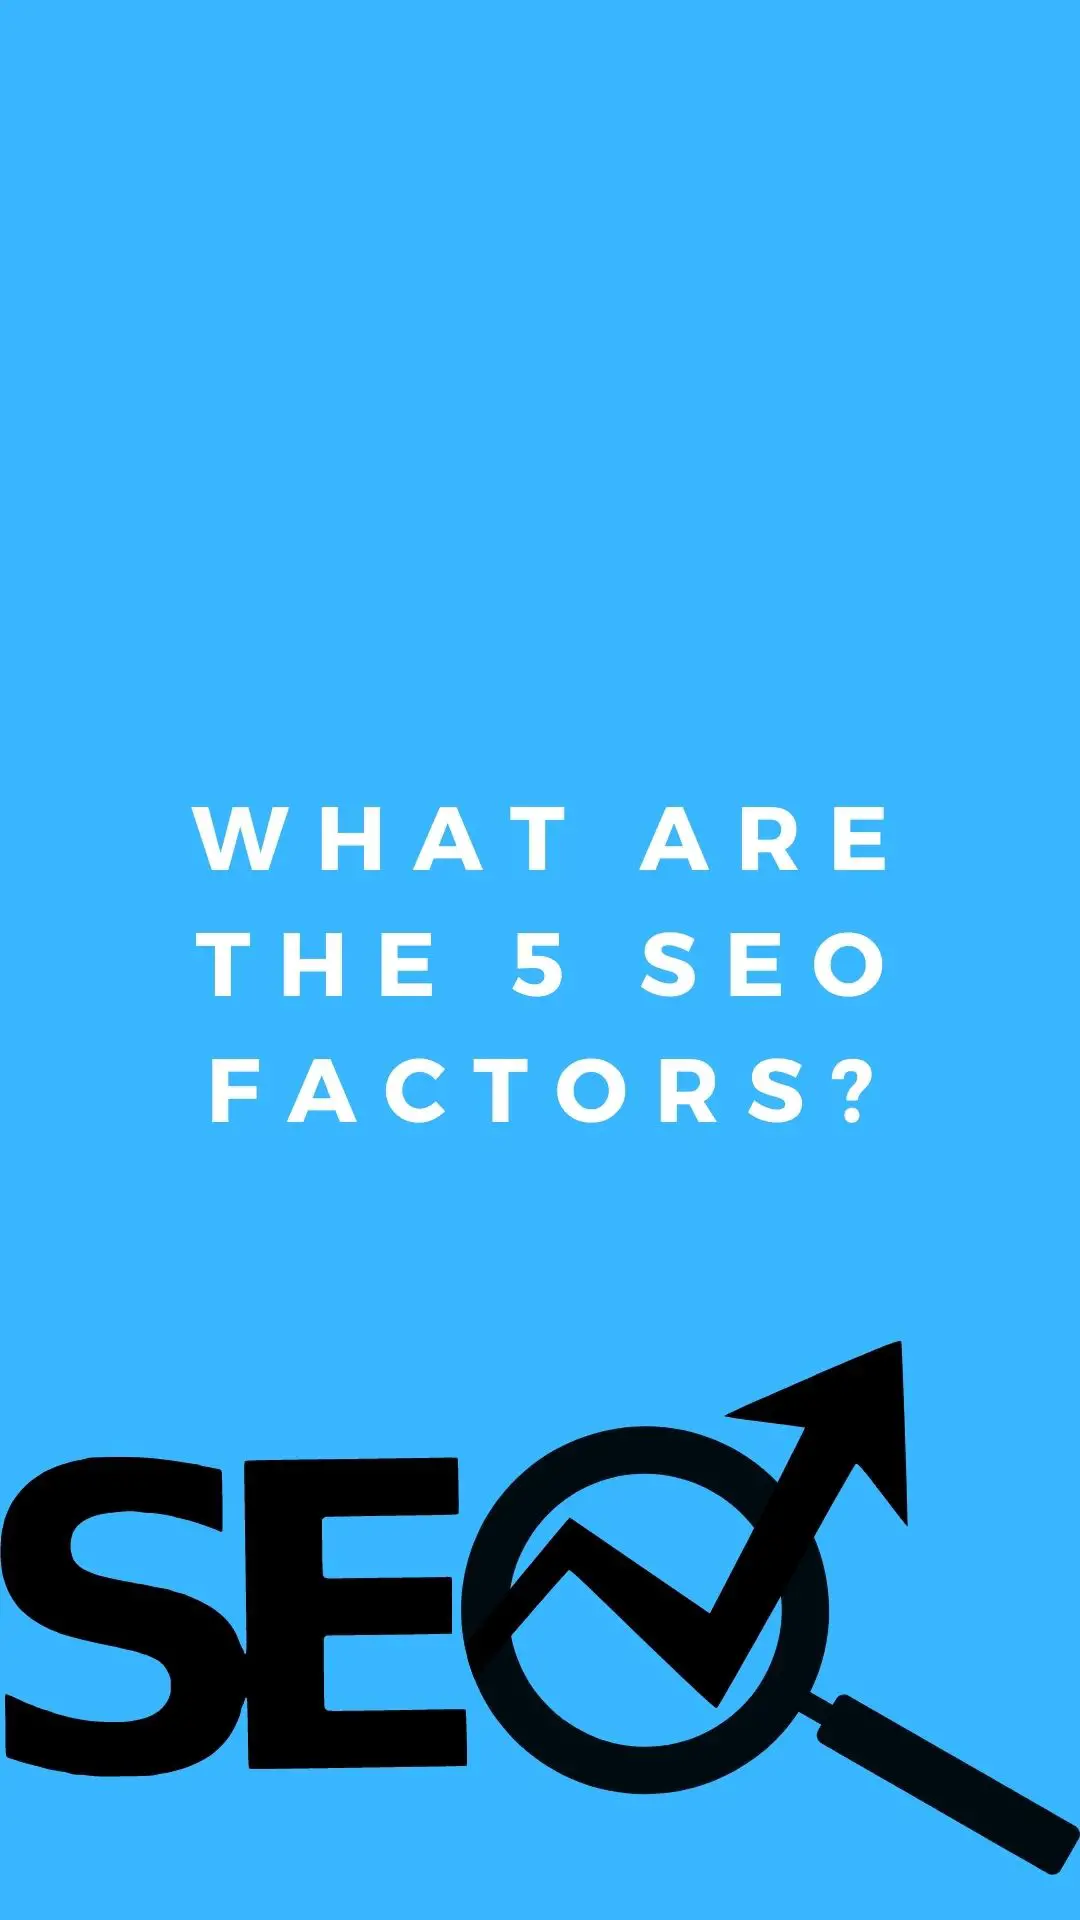 Hvad er de 5 SEO-faktorer?: Søgeords forskning, URL-optimering, metatags, header-tags, indholds optimering